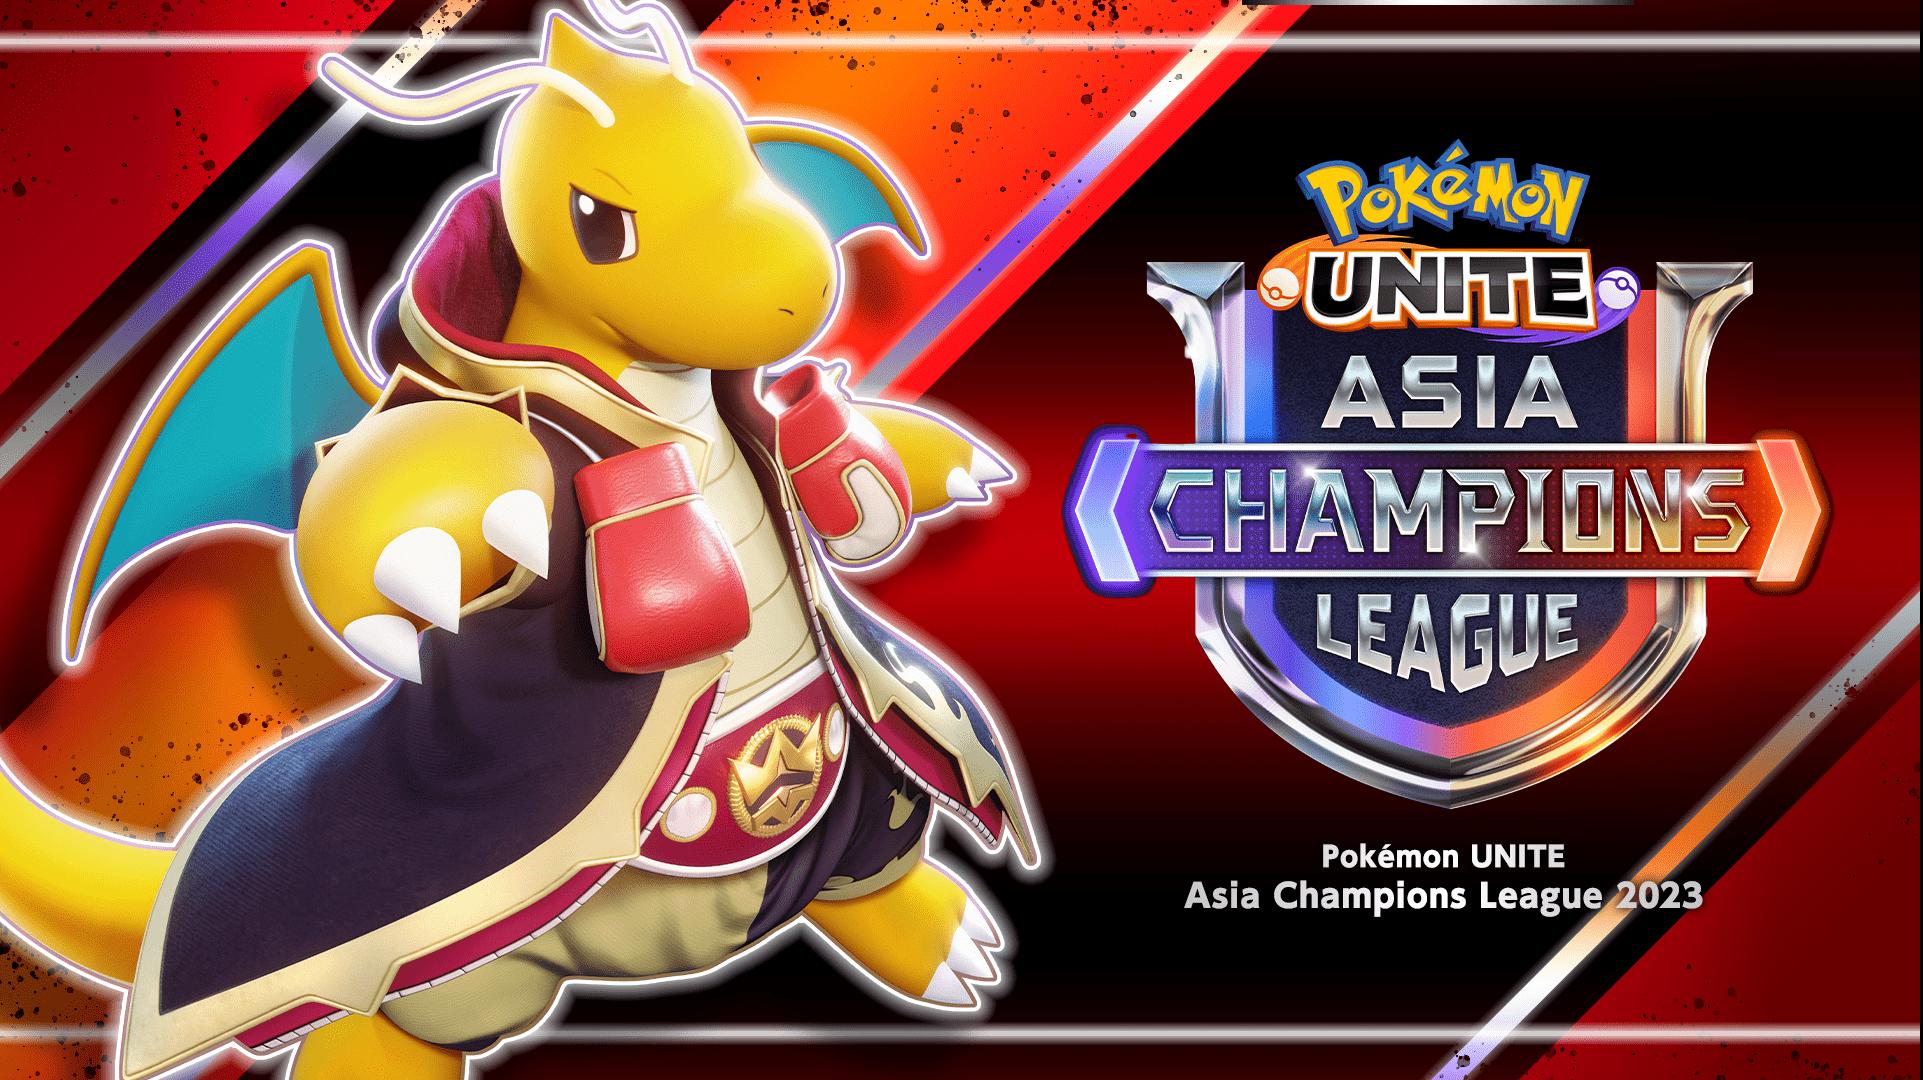 Pokémon UNITE Asia Champions League 2023 feature image